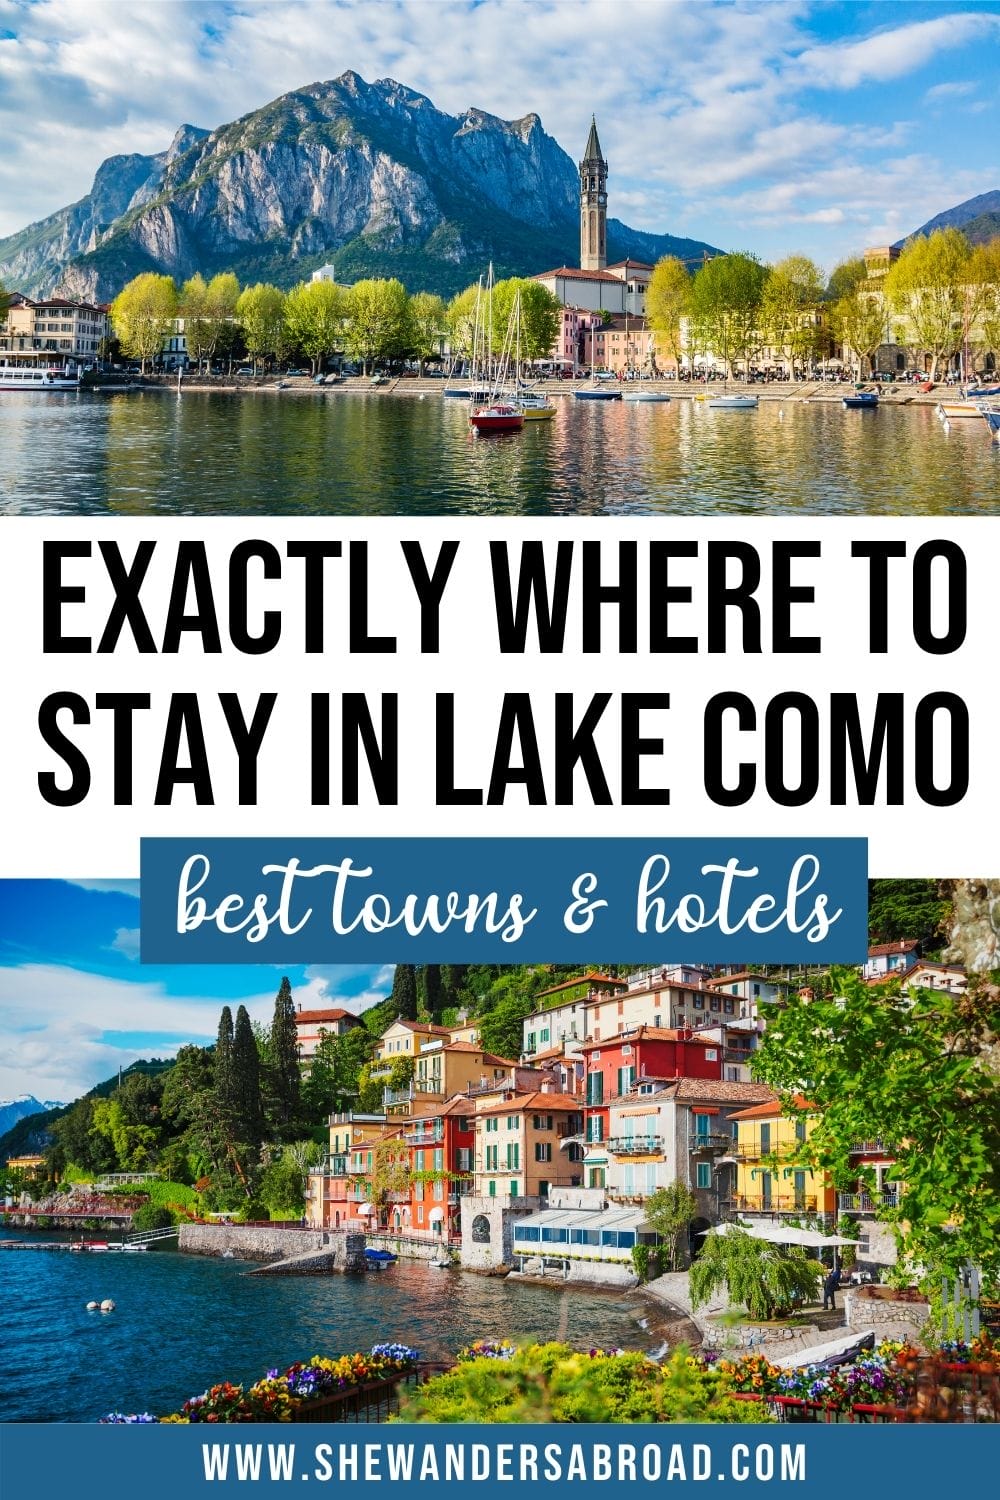 bedste steder at bo i Comosøen: Bedste Byer hoteller